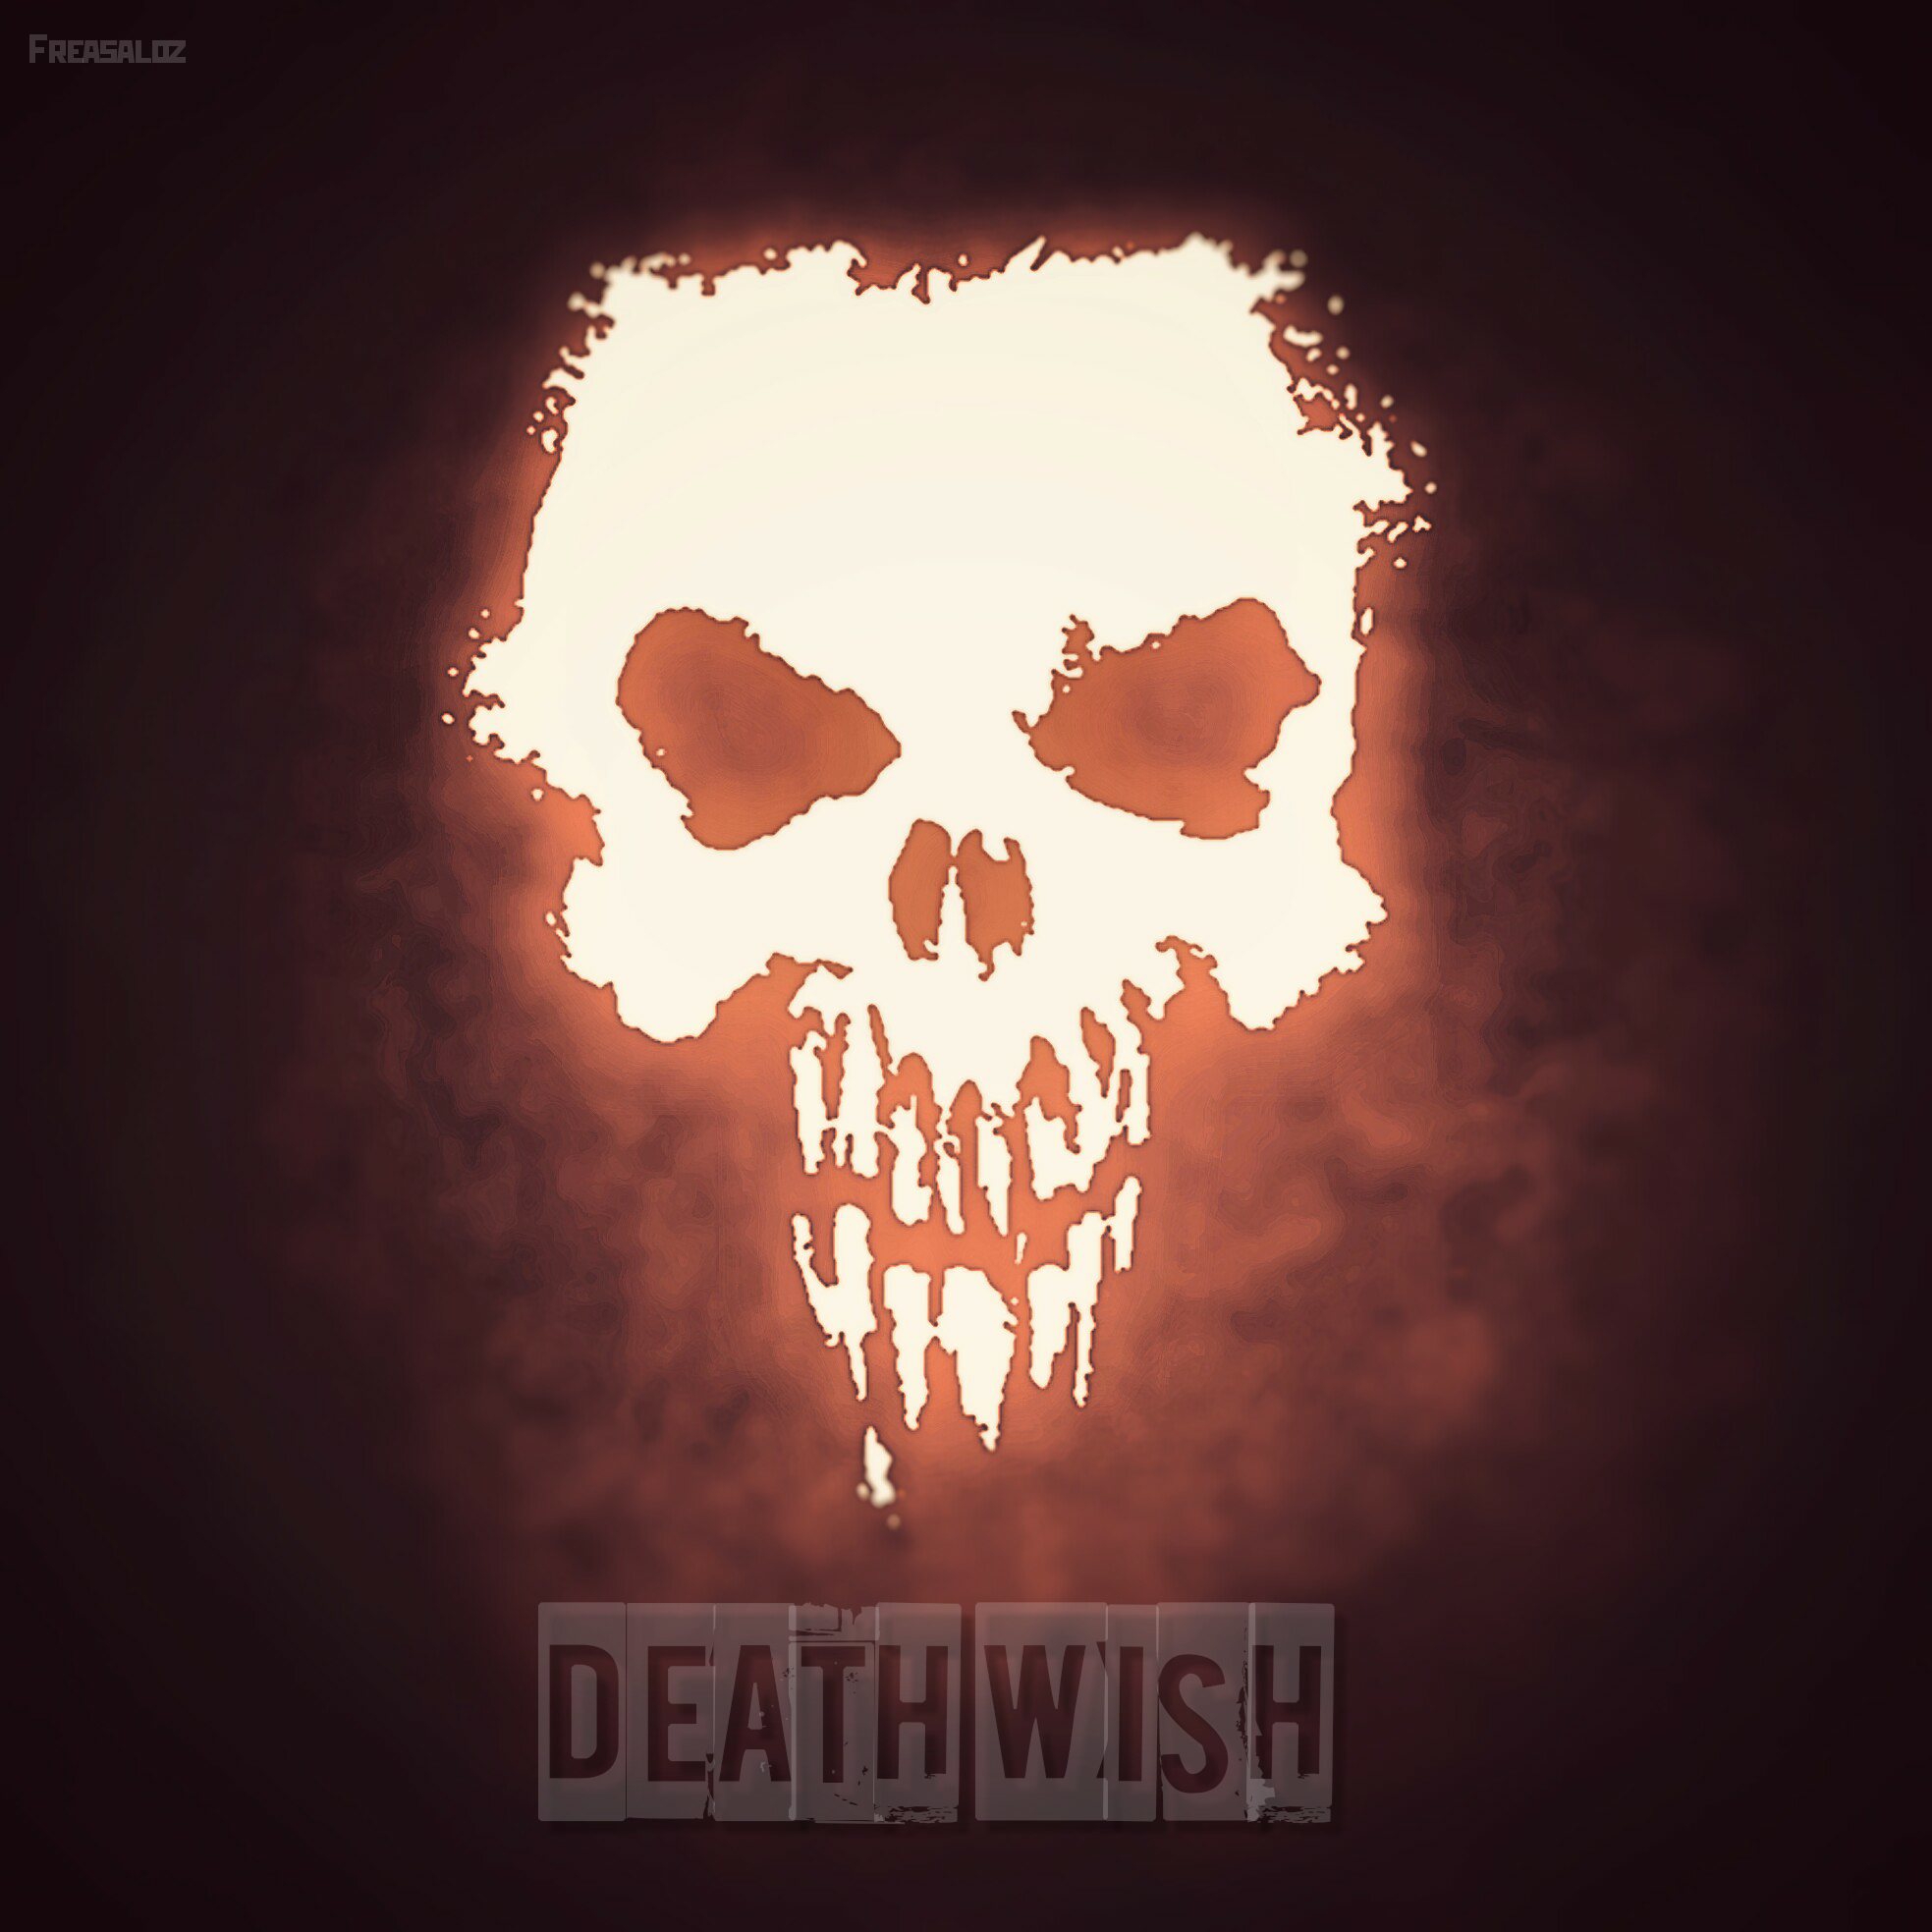 Death wish payday 2 trailer фото 2